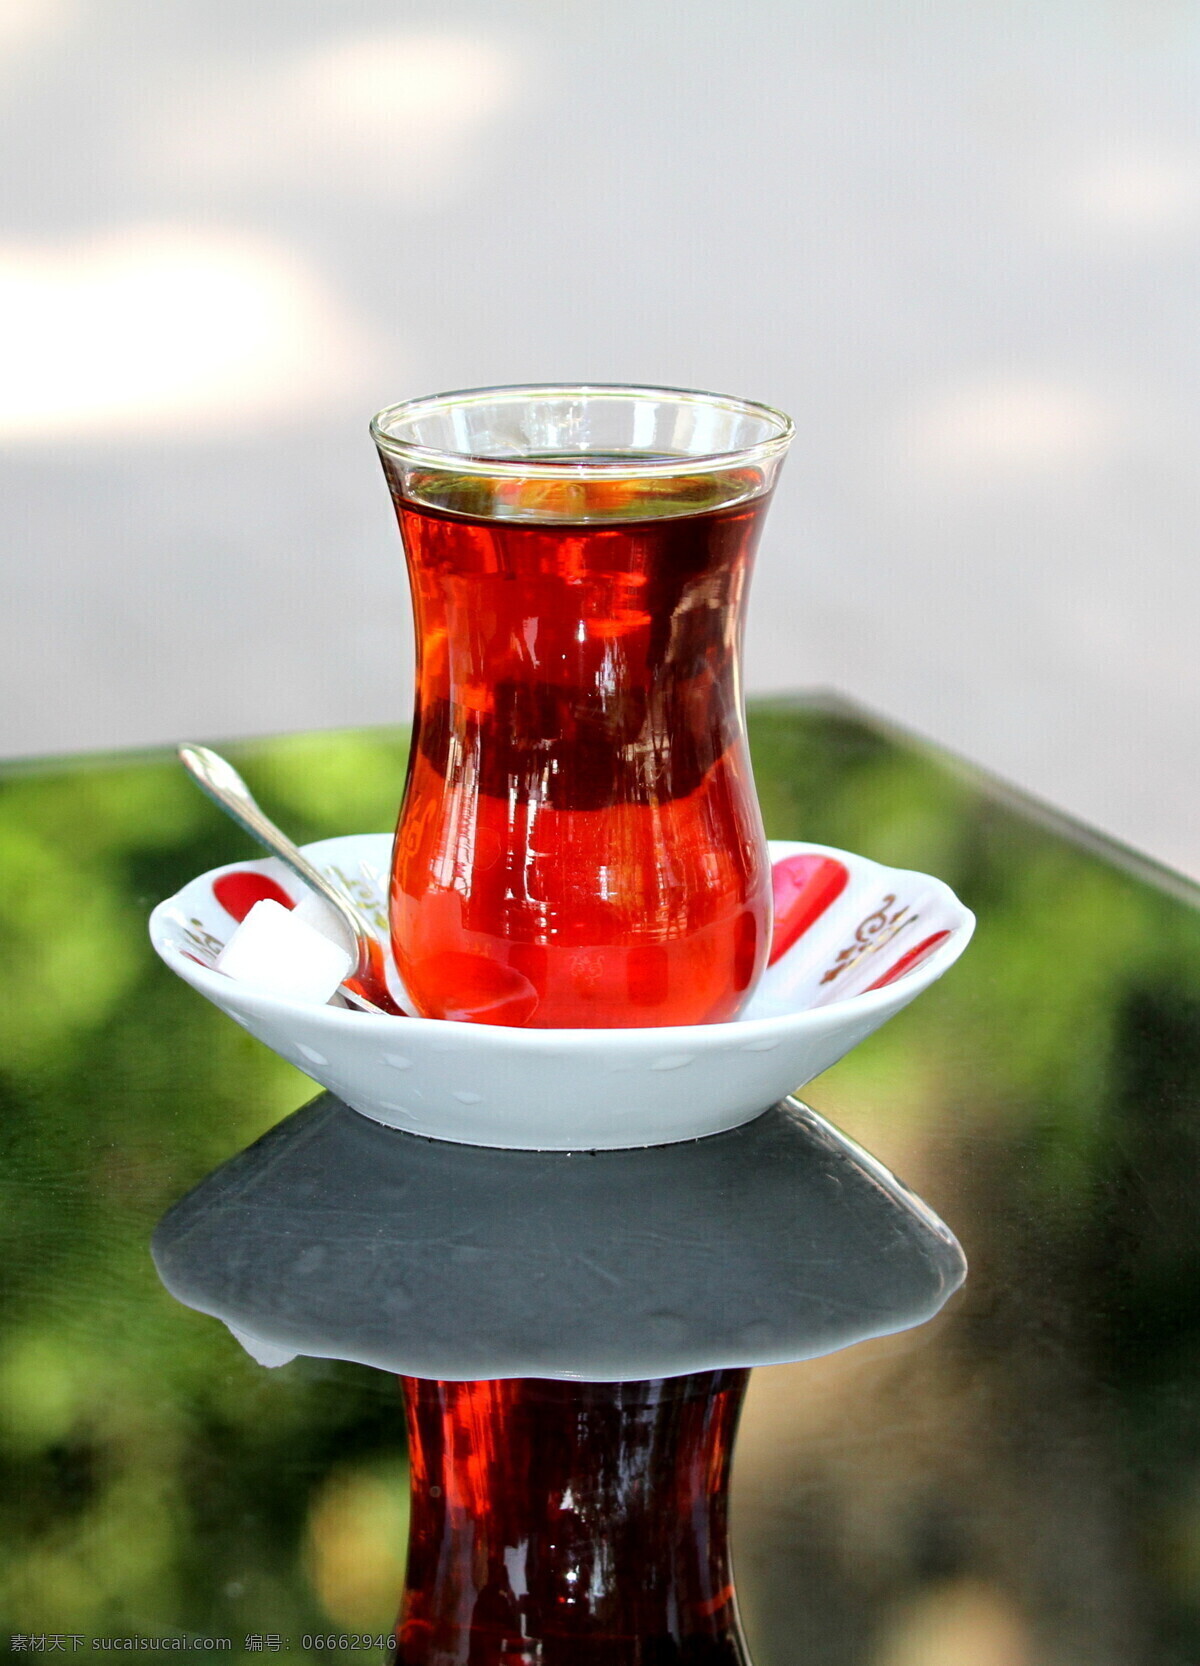 土耳其 红茶 土耳其茶 茶饮料 茶文化 玻璃茶杯 玻璃杯子 茶道图片 餐饮美食